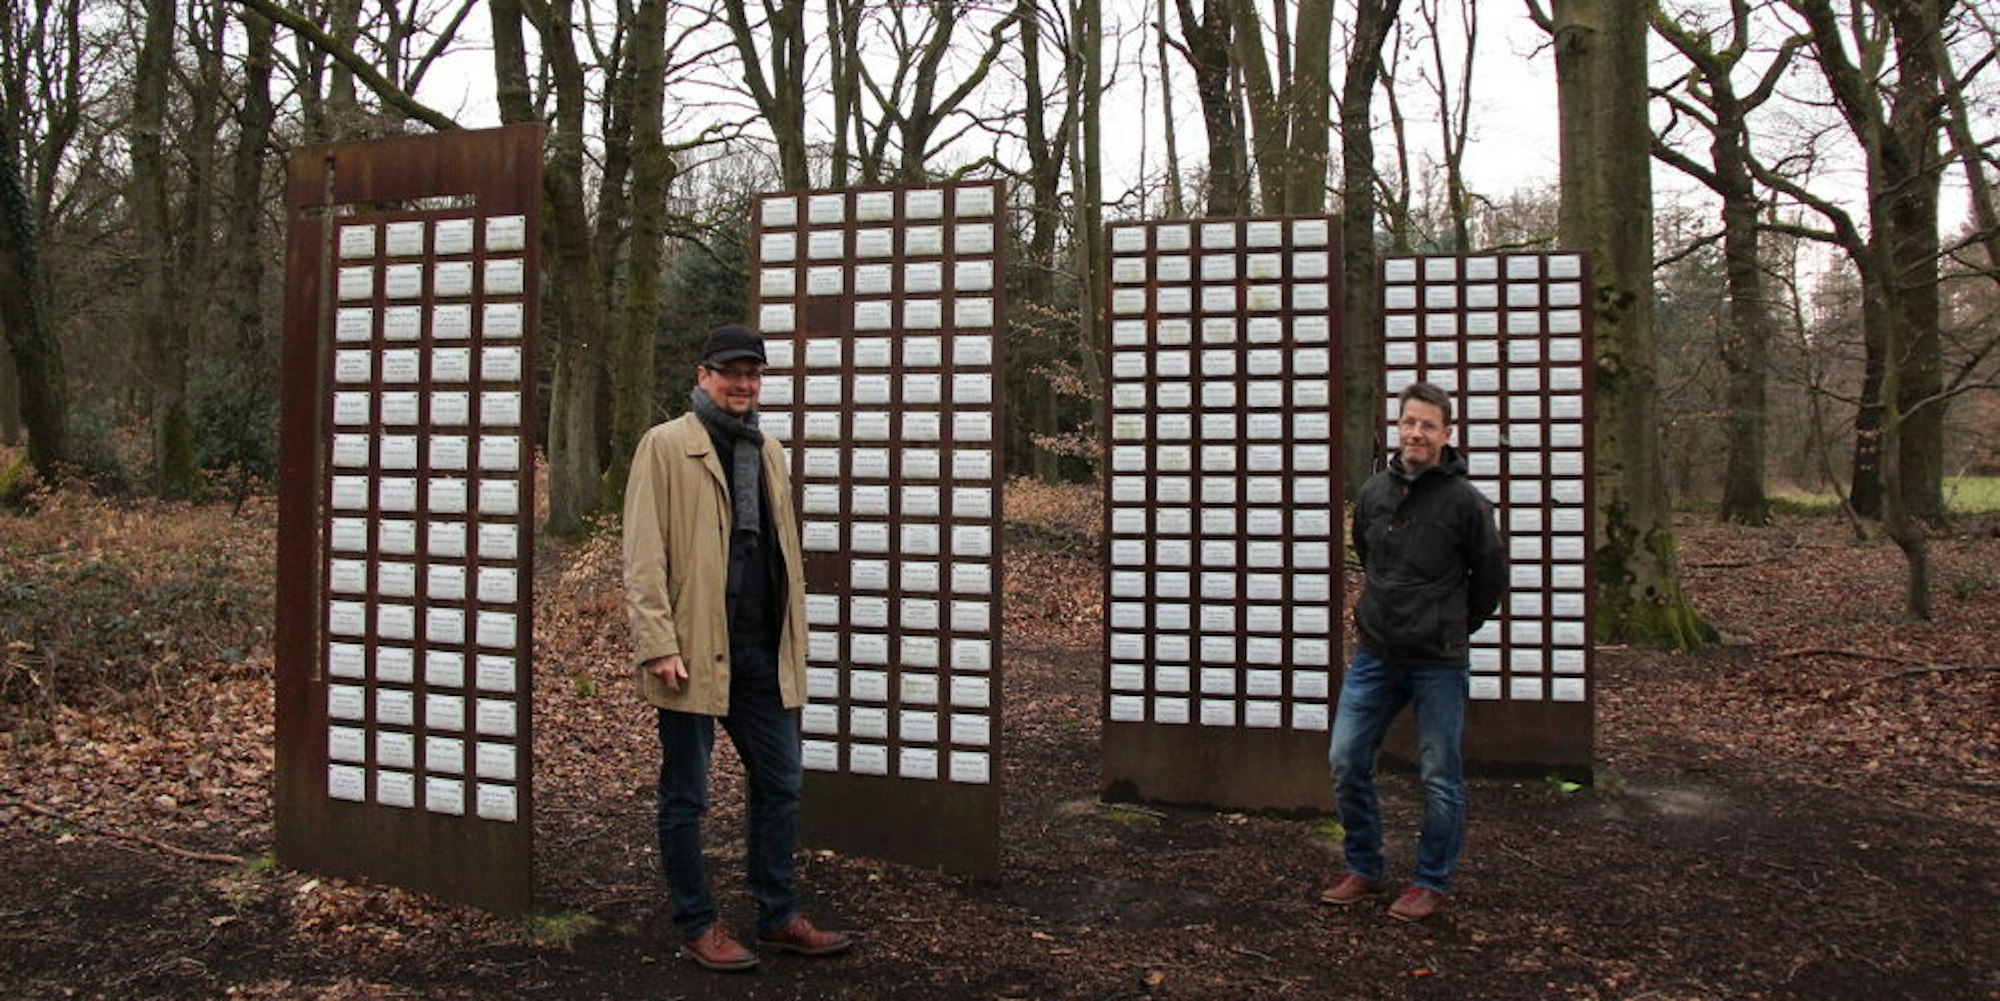 Namensschilder kennzeichnen die Grabstätten im Ruhewald. Beigeordneter Michael Walter und Umweltamtsleiter Johannes Oppermann zwischen den Stelen.